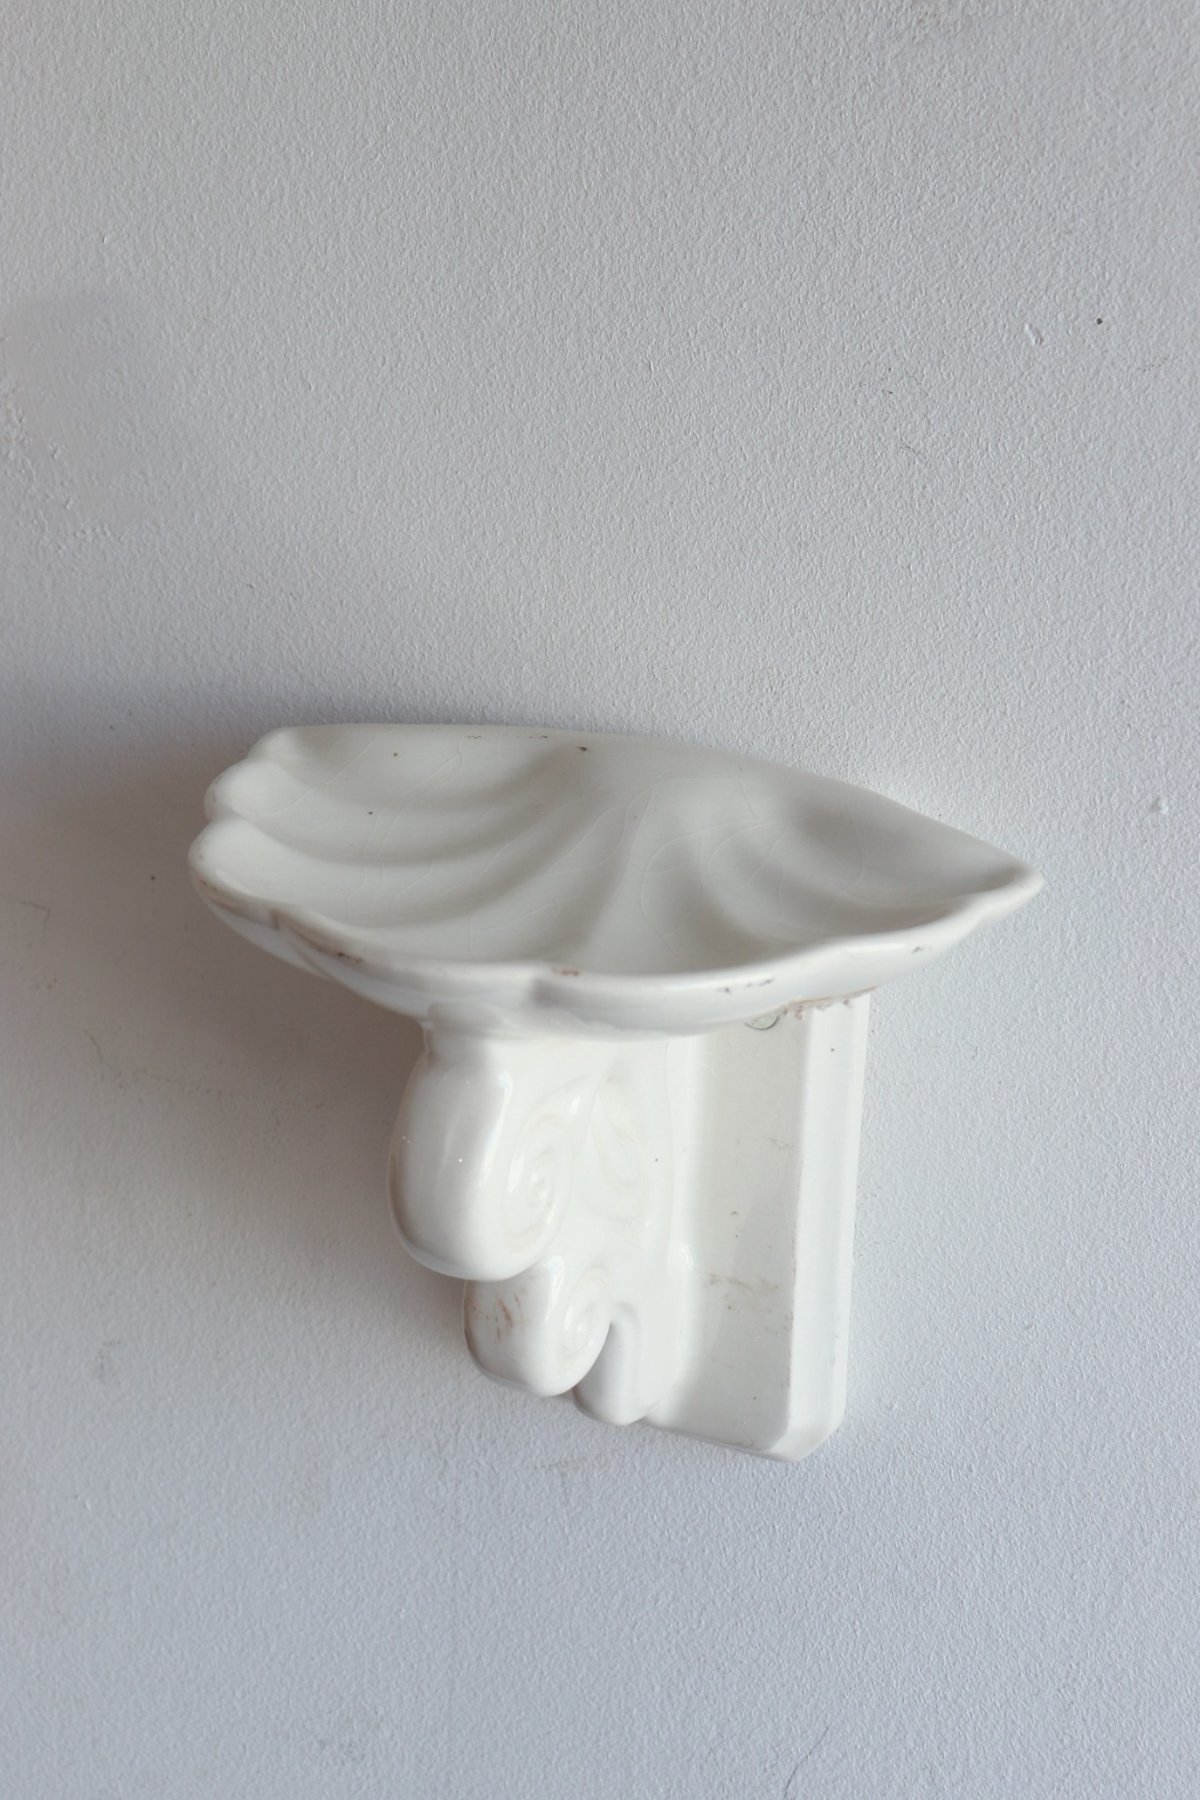 ceramic wall soap dish [DY]